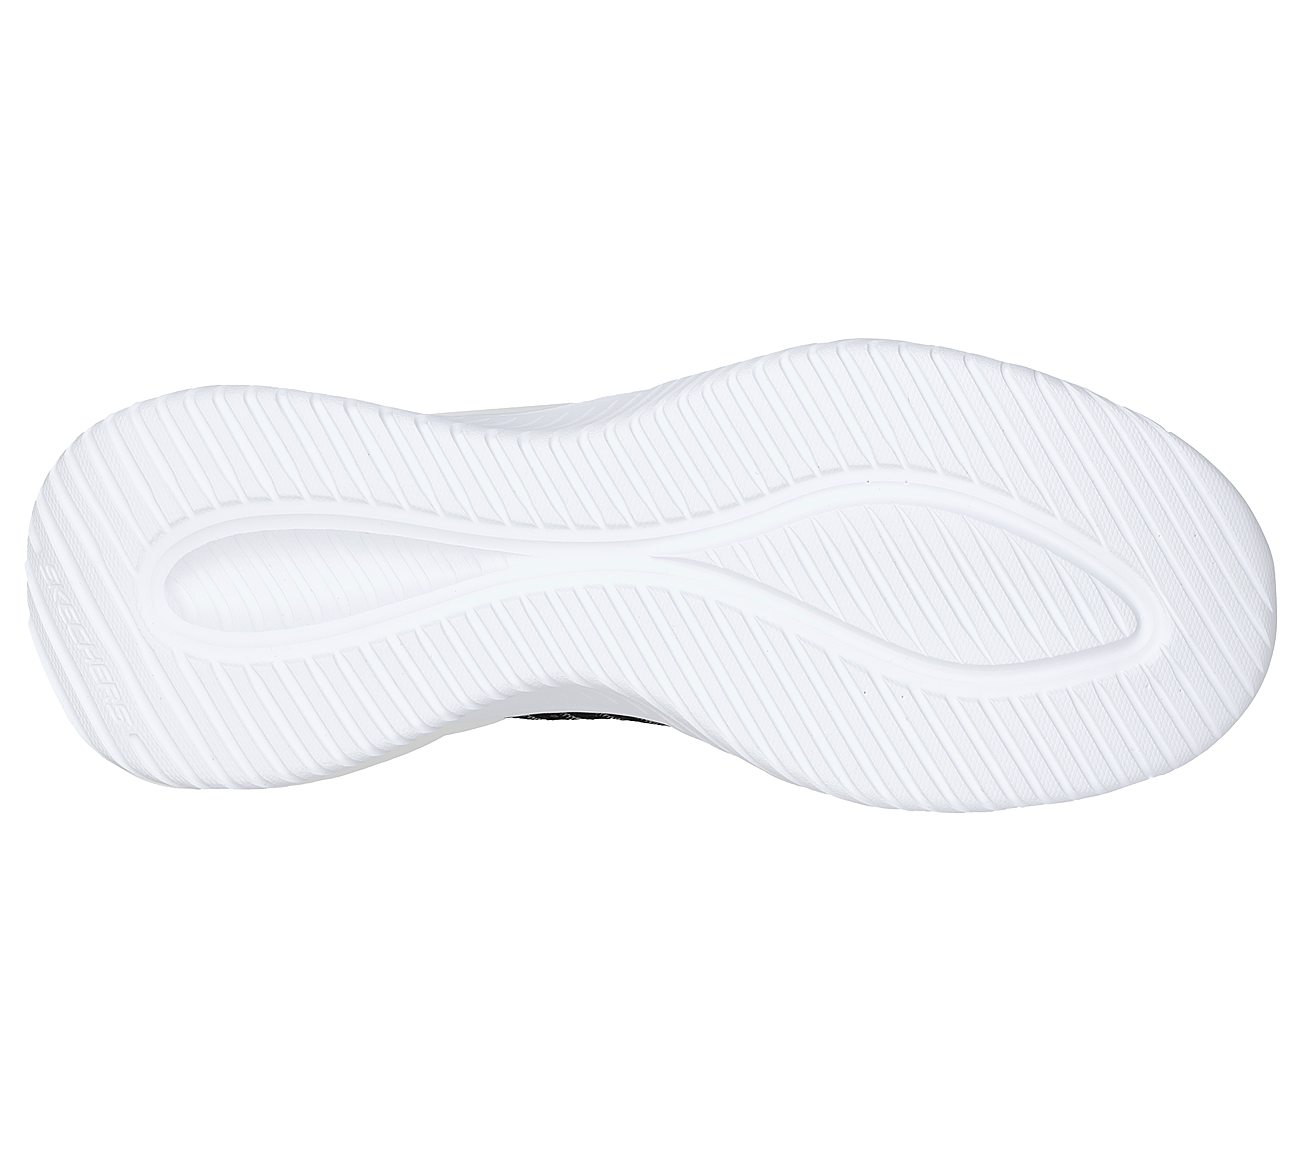 ULTRA FLEX 3.0 - WINTEK, BLACK/WHITE Footwear Bottom View